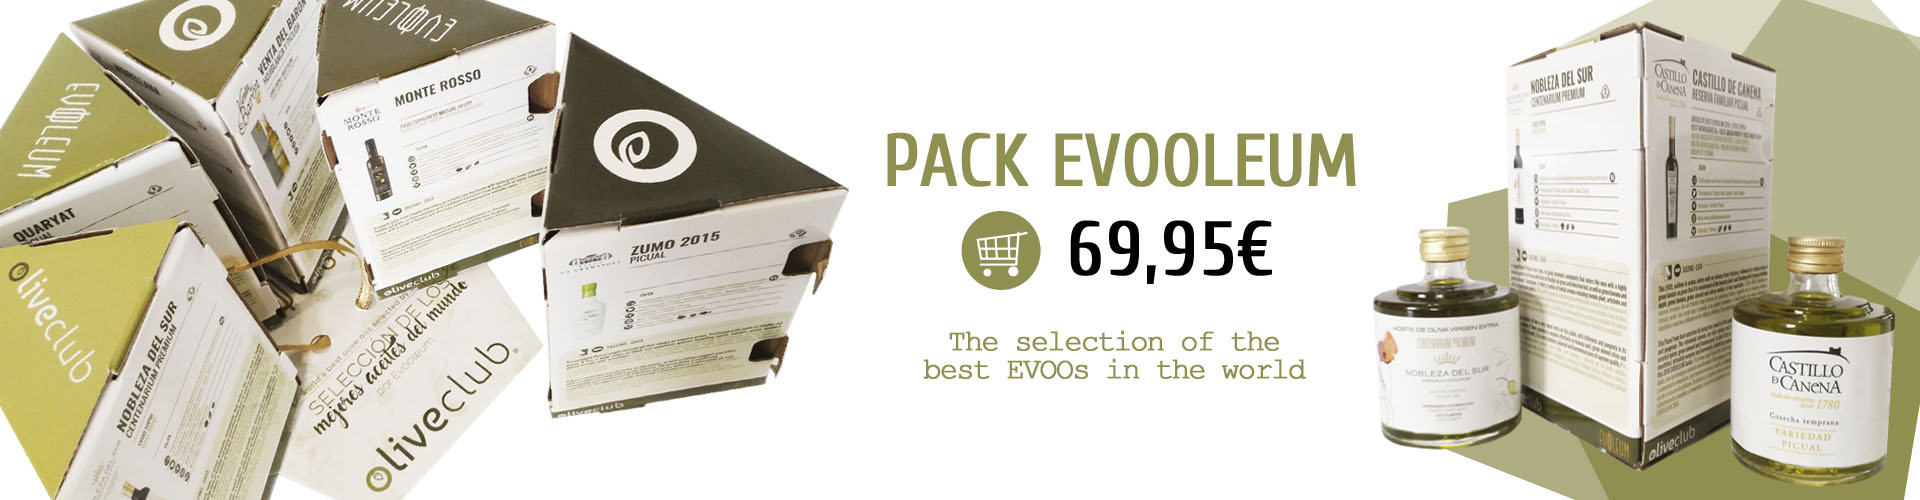 Pack Evooleum